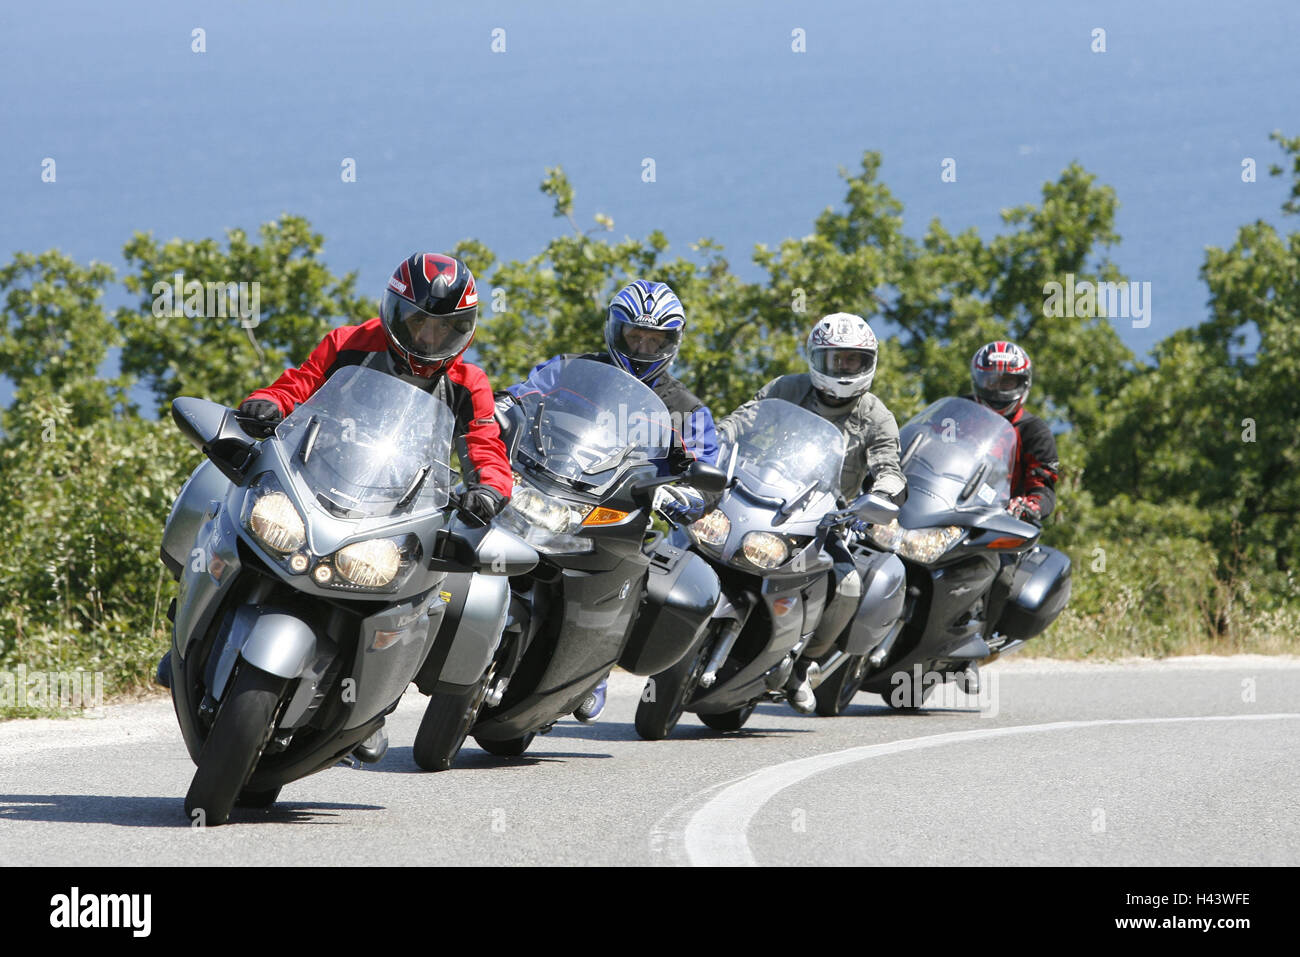 Tourer VT, gruppo, country road, piegare, 4 formazione, scenario, gruppo motociclistico, persona, driver motociclista, quattro, uno dopo l'altro, insieme, motociclette, moto, Street, Tourer, go, vista frontale Foto Stock